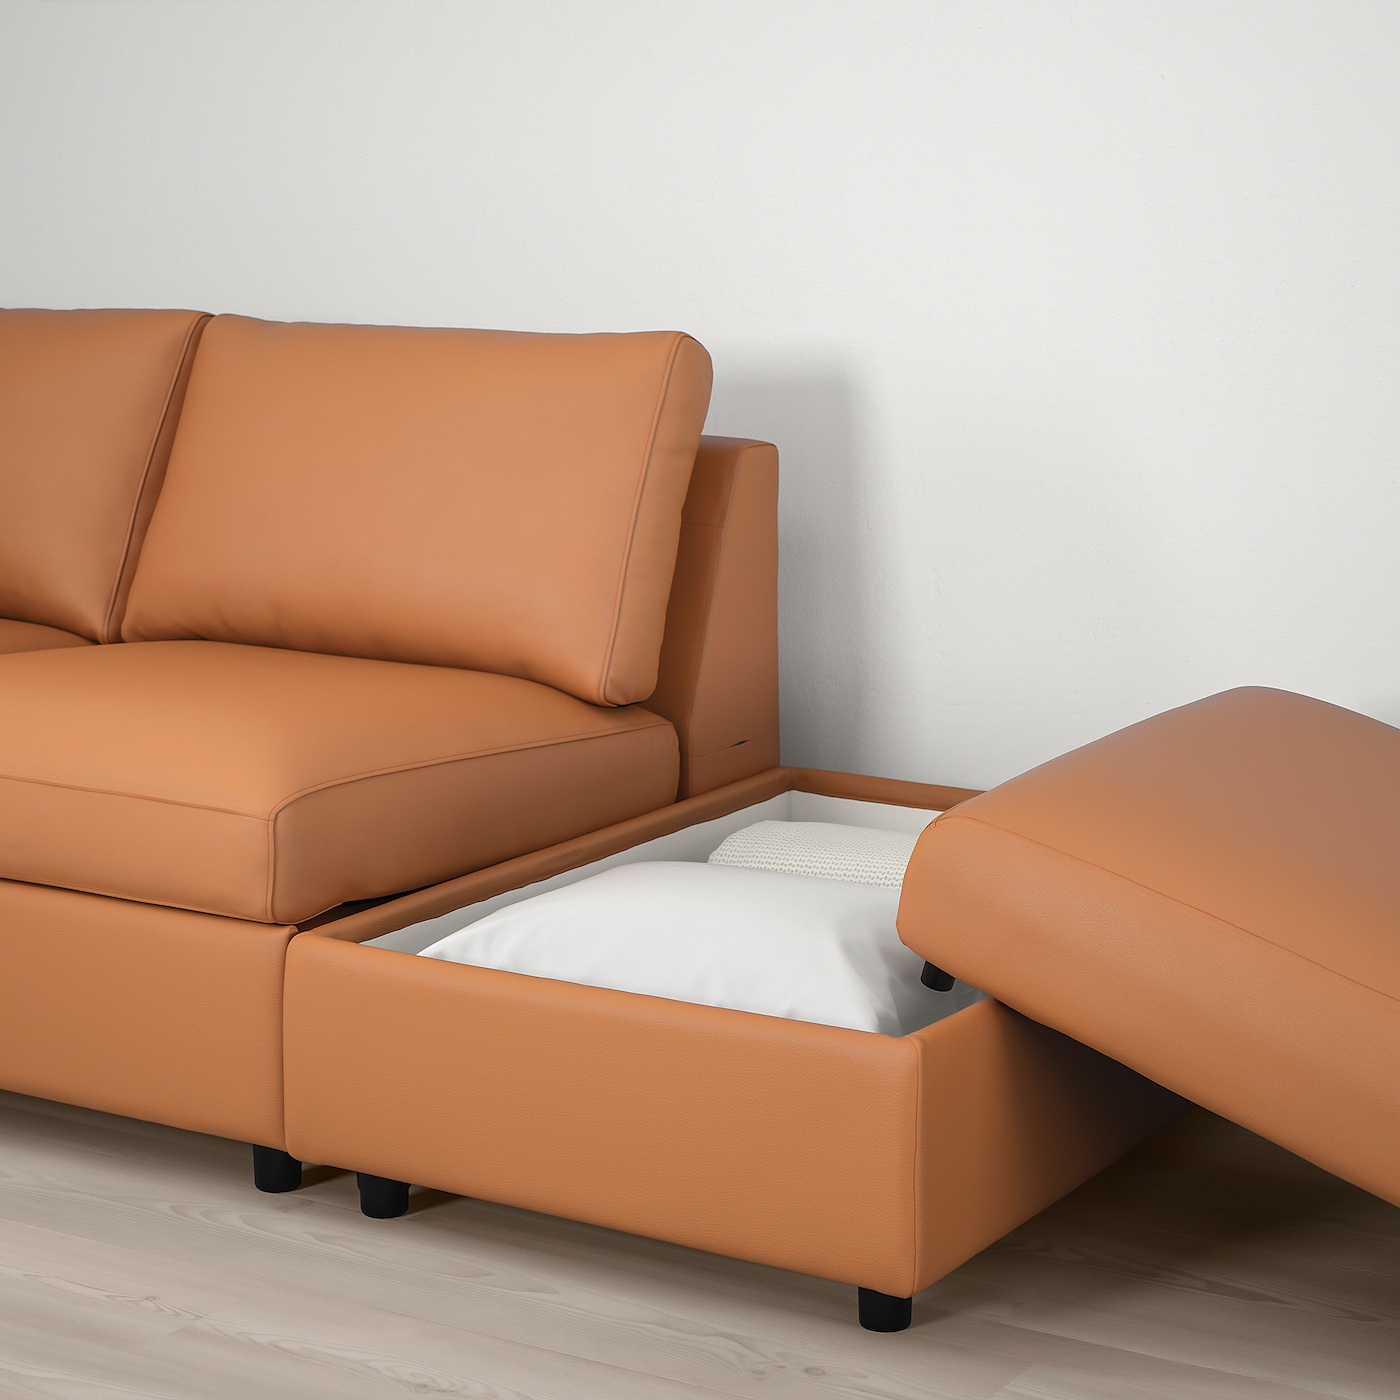 VIMLE ВИМЛЕ 2-местный диван, гранн/Бумстад золотисто-коричневый